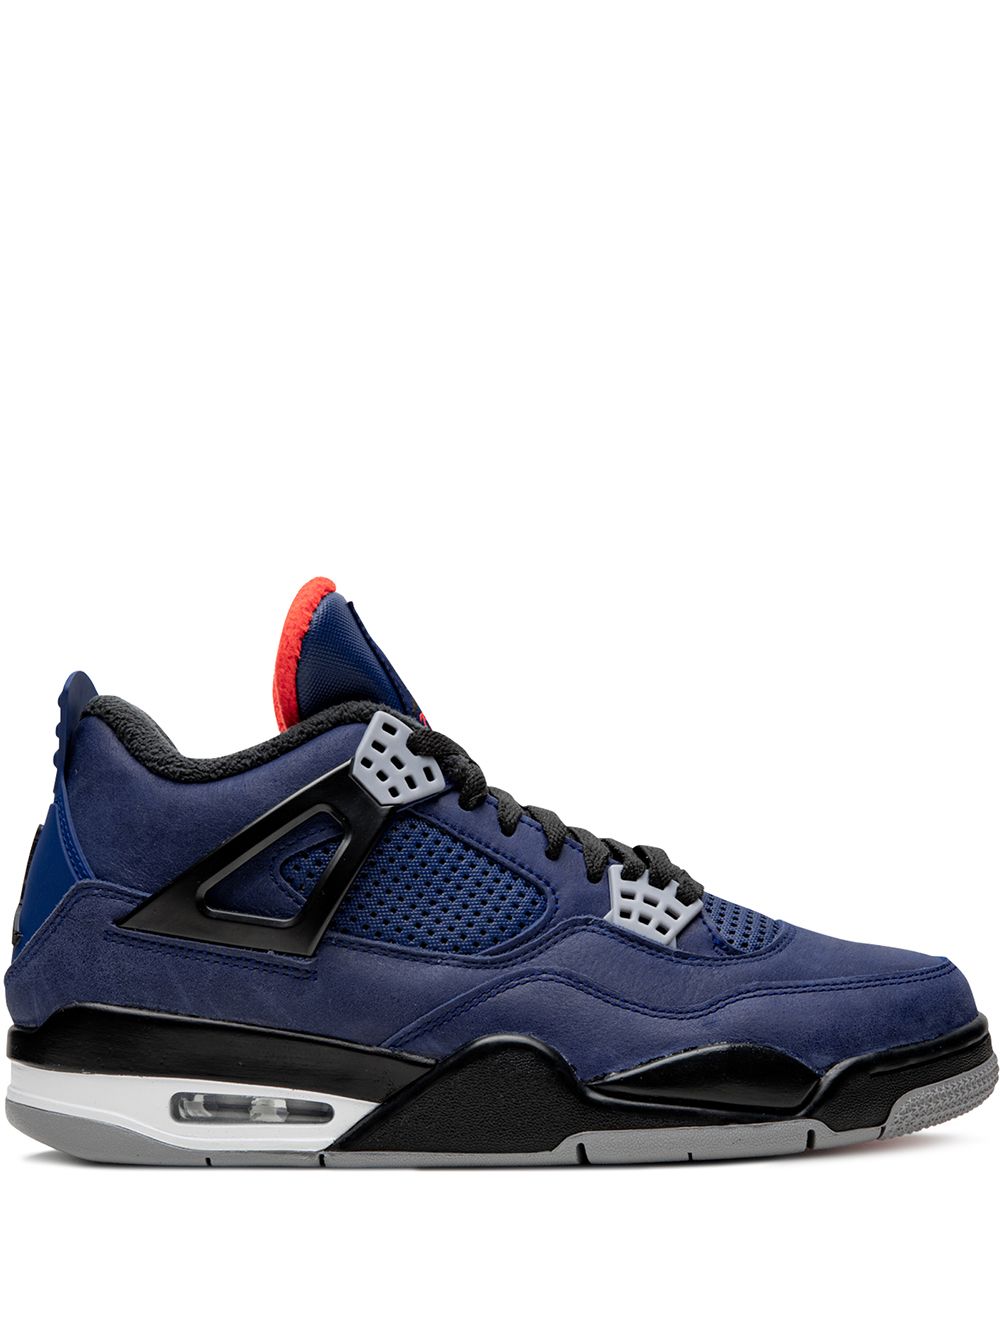 Jordan Air Jordan 4 "Winterized Loyal Blue" sneakers